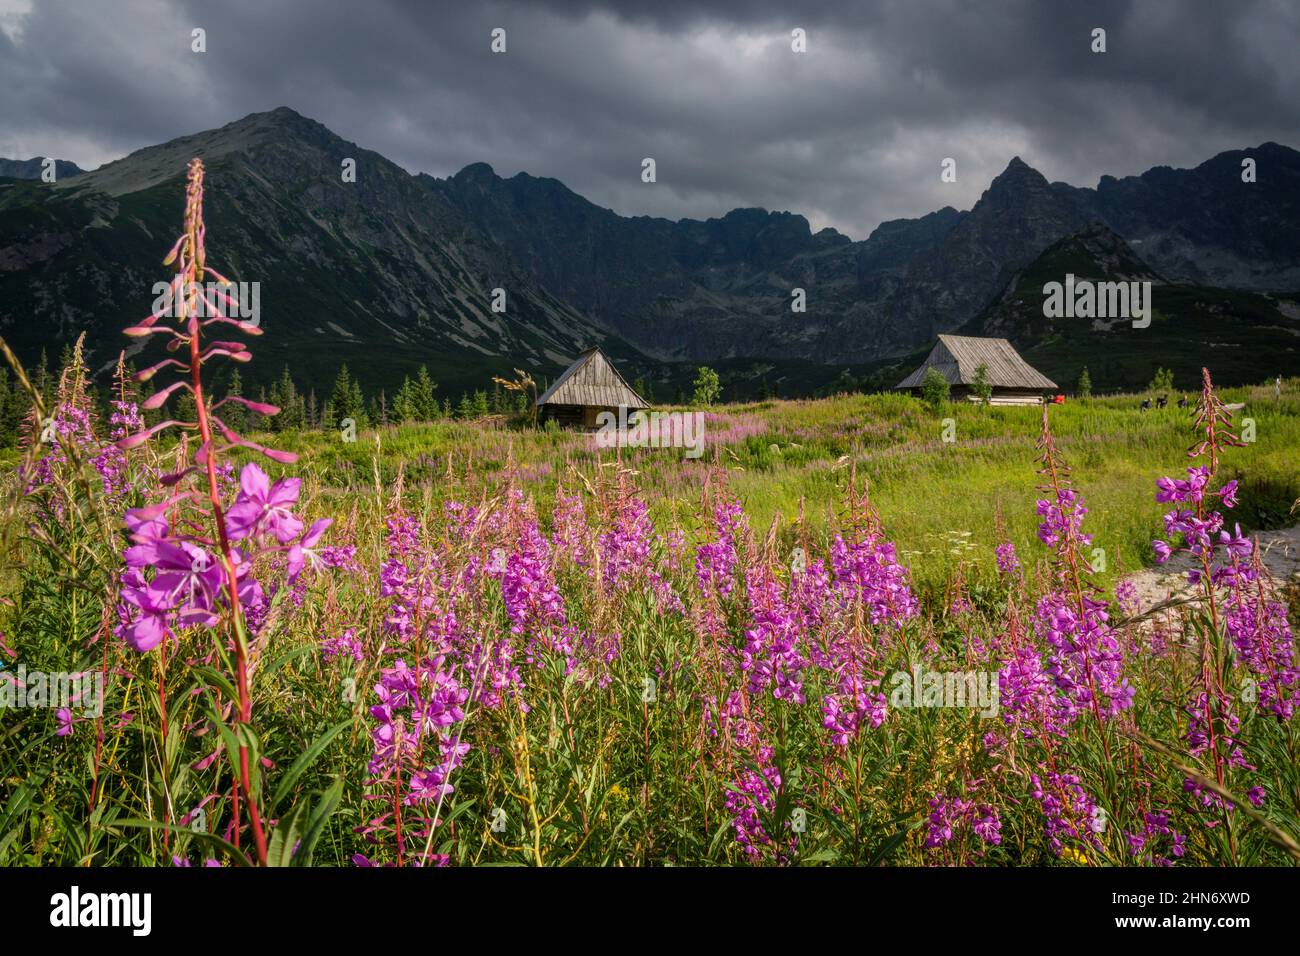 cabaña, Valle de gasienicowa , parque nacional Tatra, voivodato de la Pequeña Polonia, Cárpatos,  Polonia, europe Stock Photo